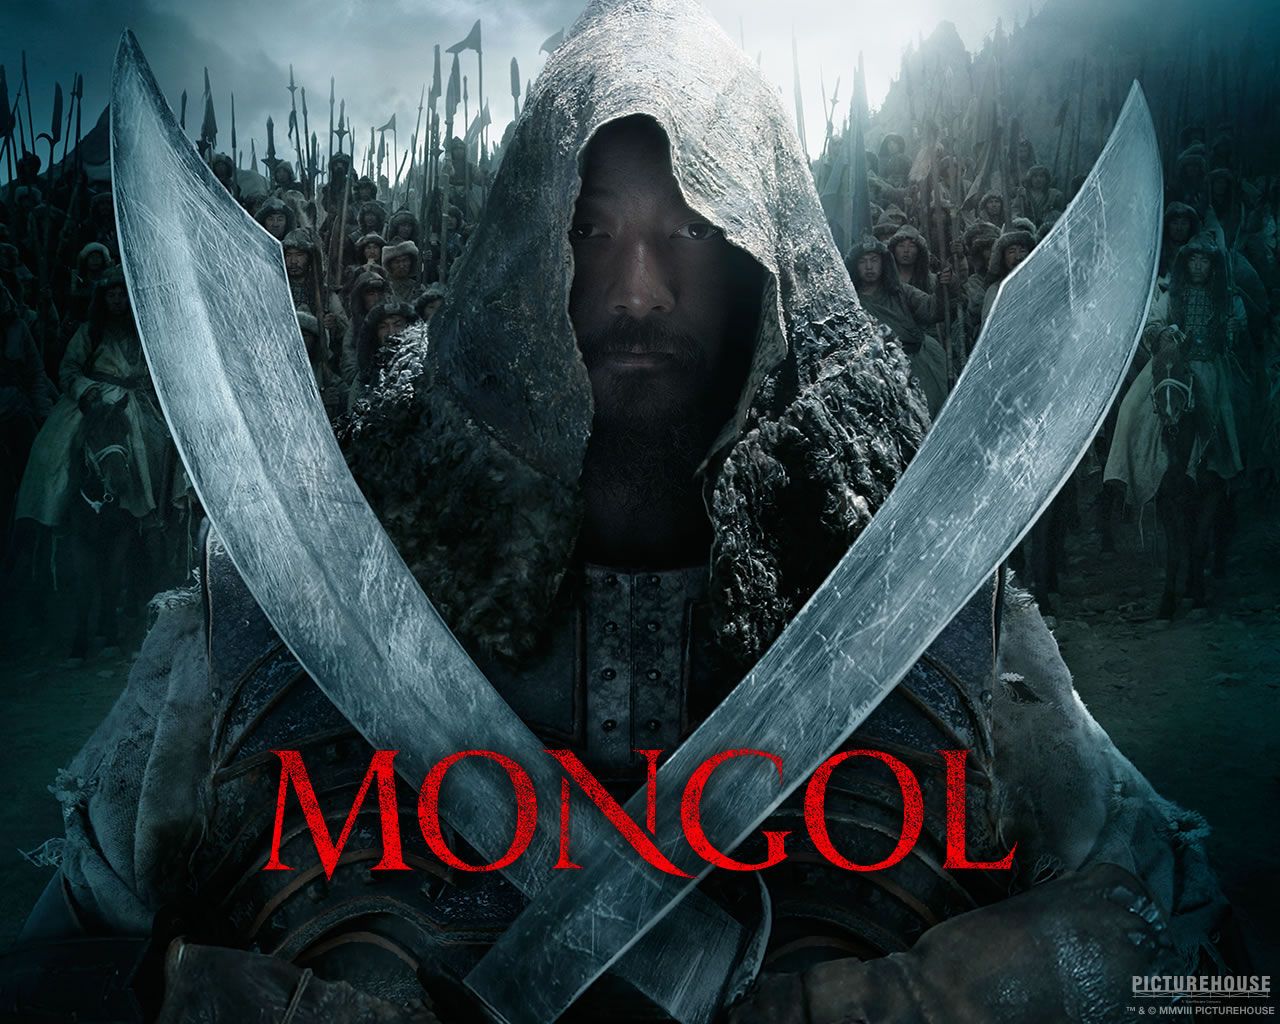 Mongol Wallpaper. Mongol Wallpaper, Mongol Genghis Khan Wallpaper and Mongol Battle Wallpaper